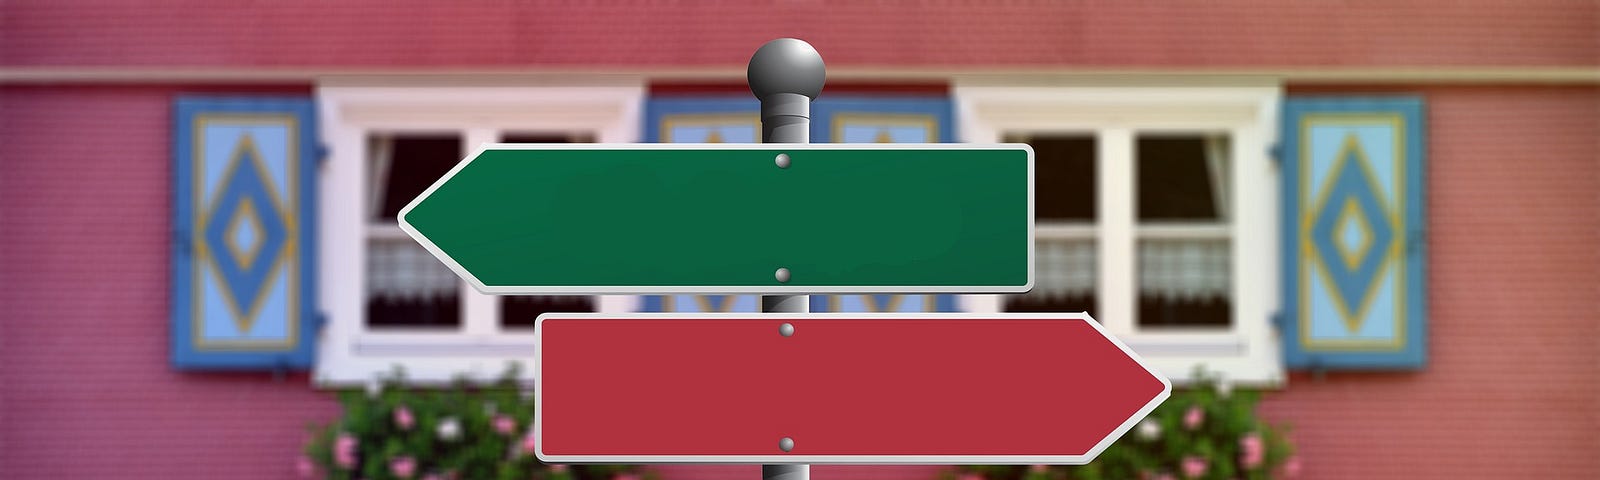 Imagem de duas setas, uma verde apontando para a esquerda e uma vermelha apontando para a esquerda, com uma casa ao fundo.